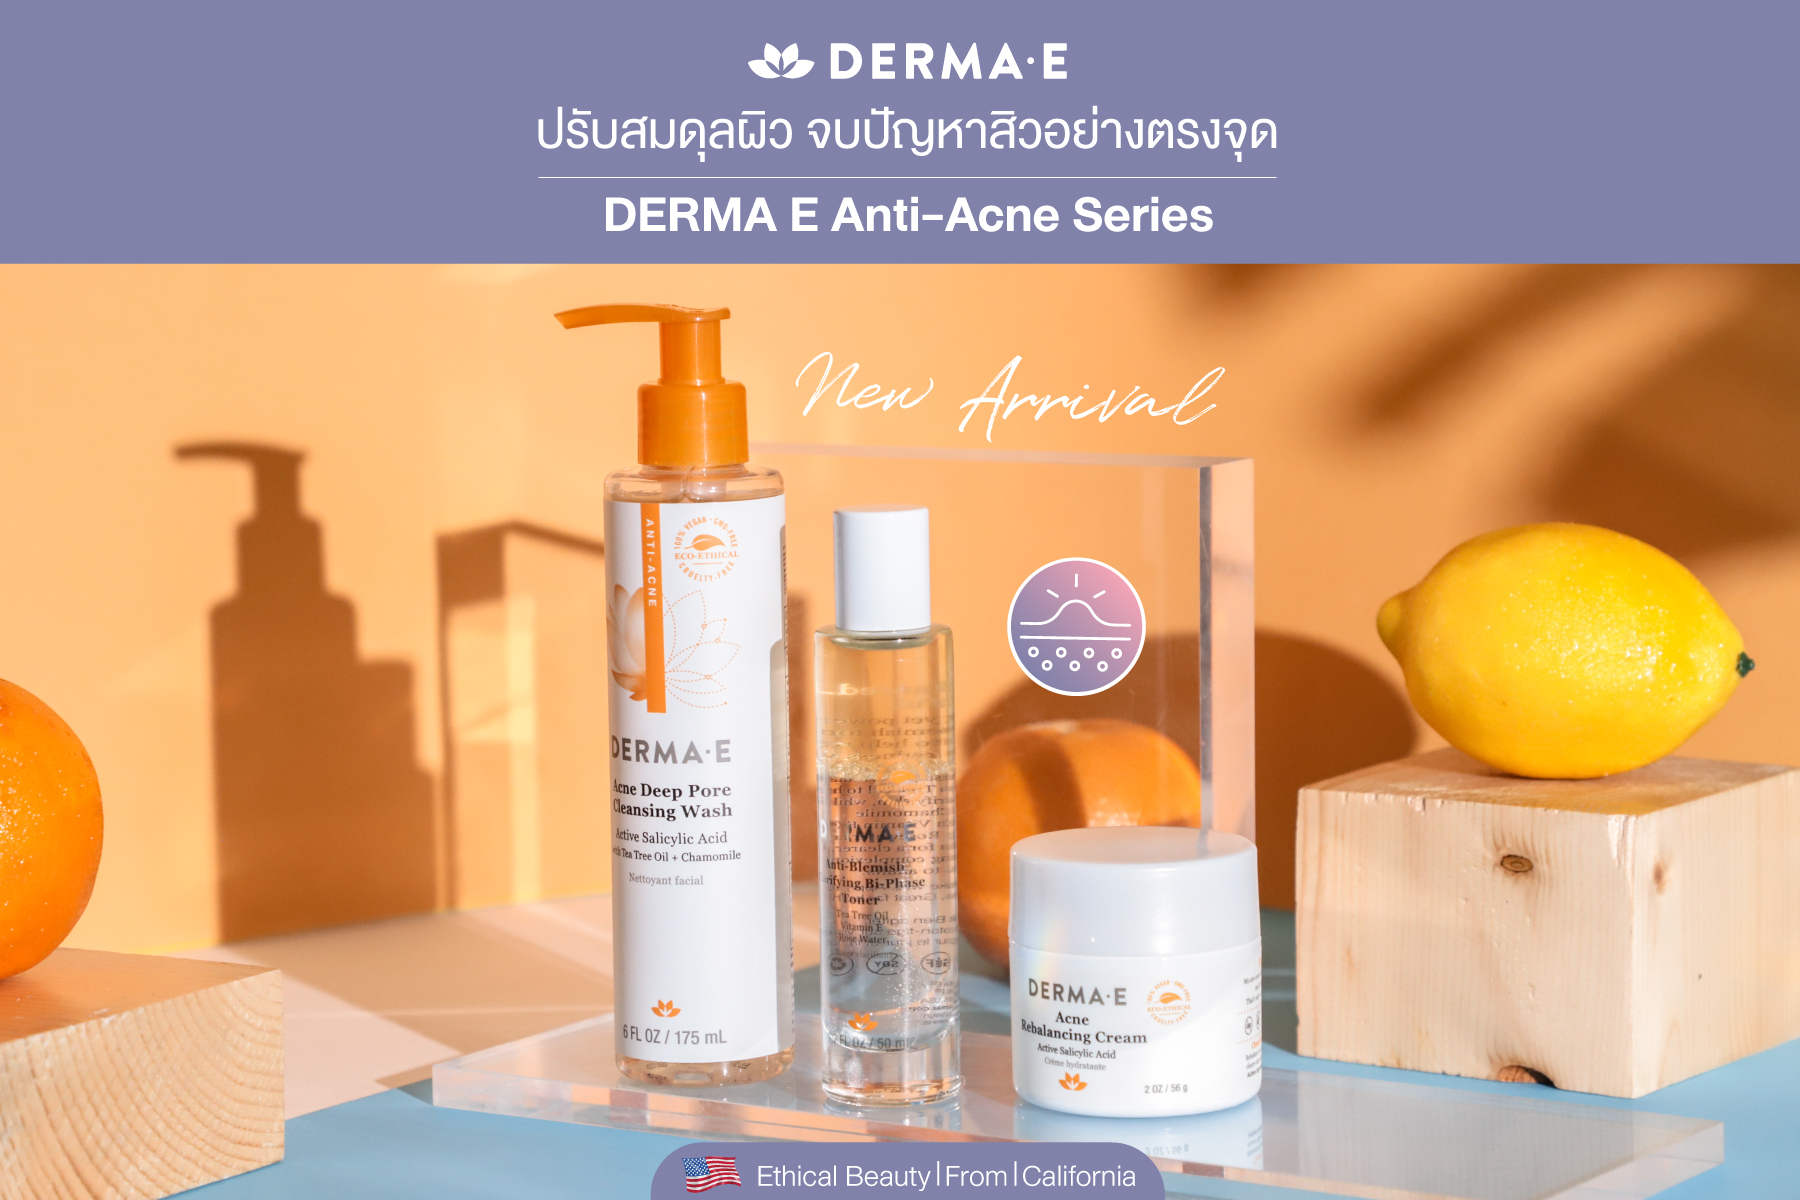 DERMA E Acne Deep Pore Cleansing Wash